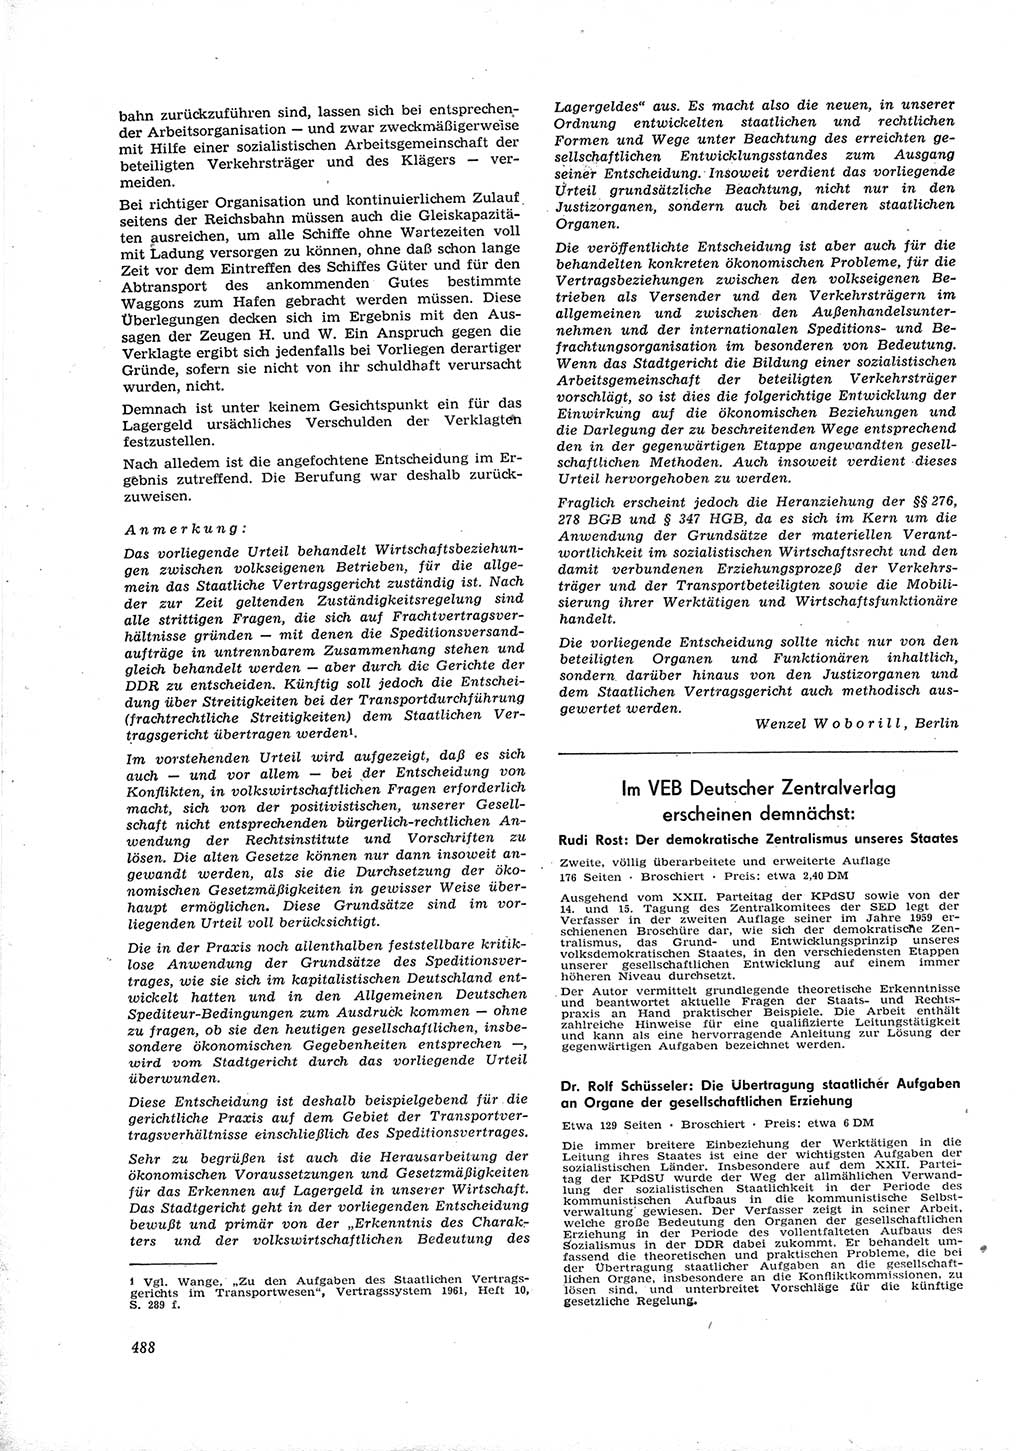 Neue Justiz (NJ), Zeitschrift für Recht und Rechtswissenschaft [Deutsche Demokratische Republik (DDR)], 16. Jahrgang 1962, Seite 488 (NJ DDR 1962, S. 488)